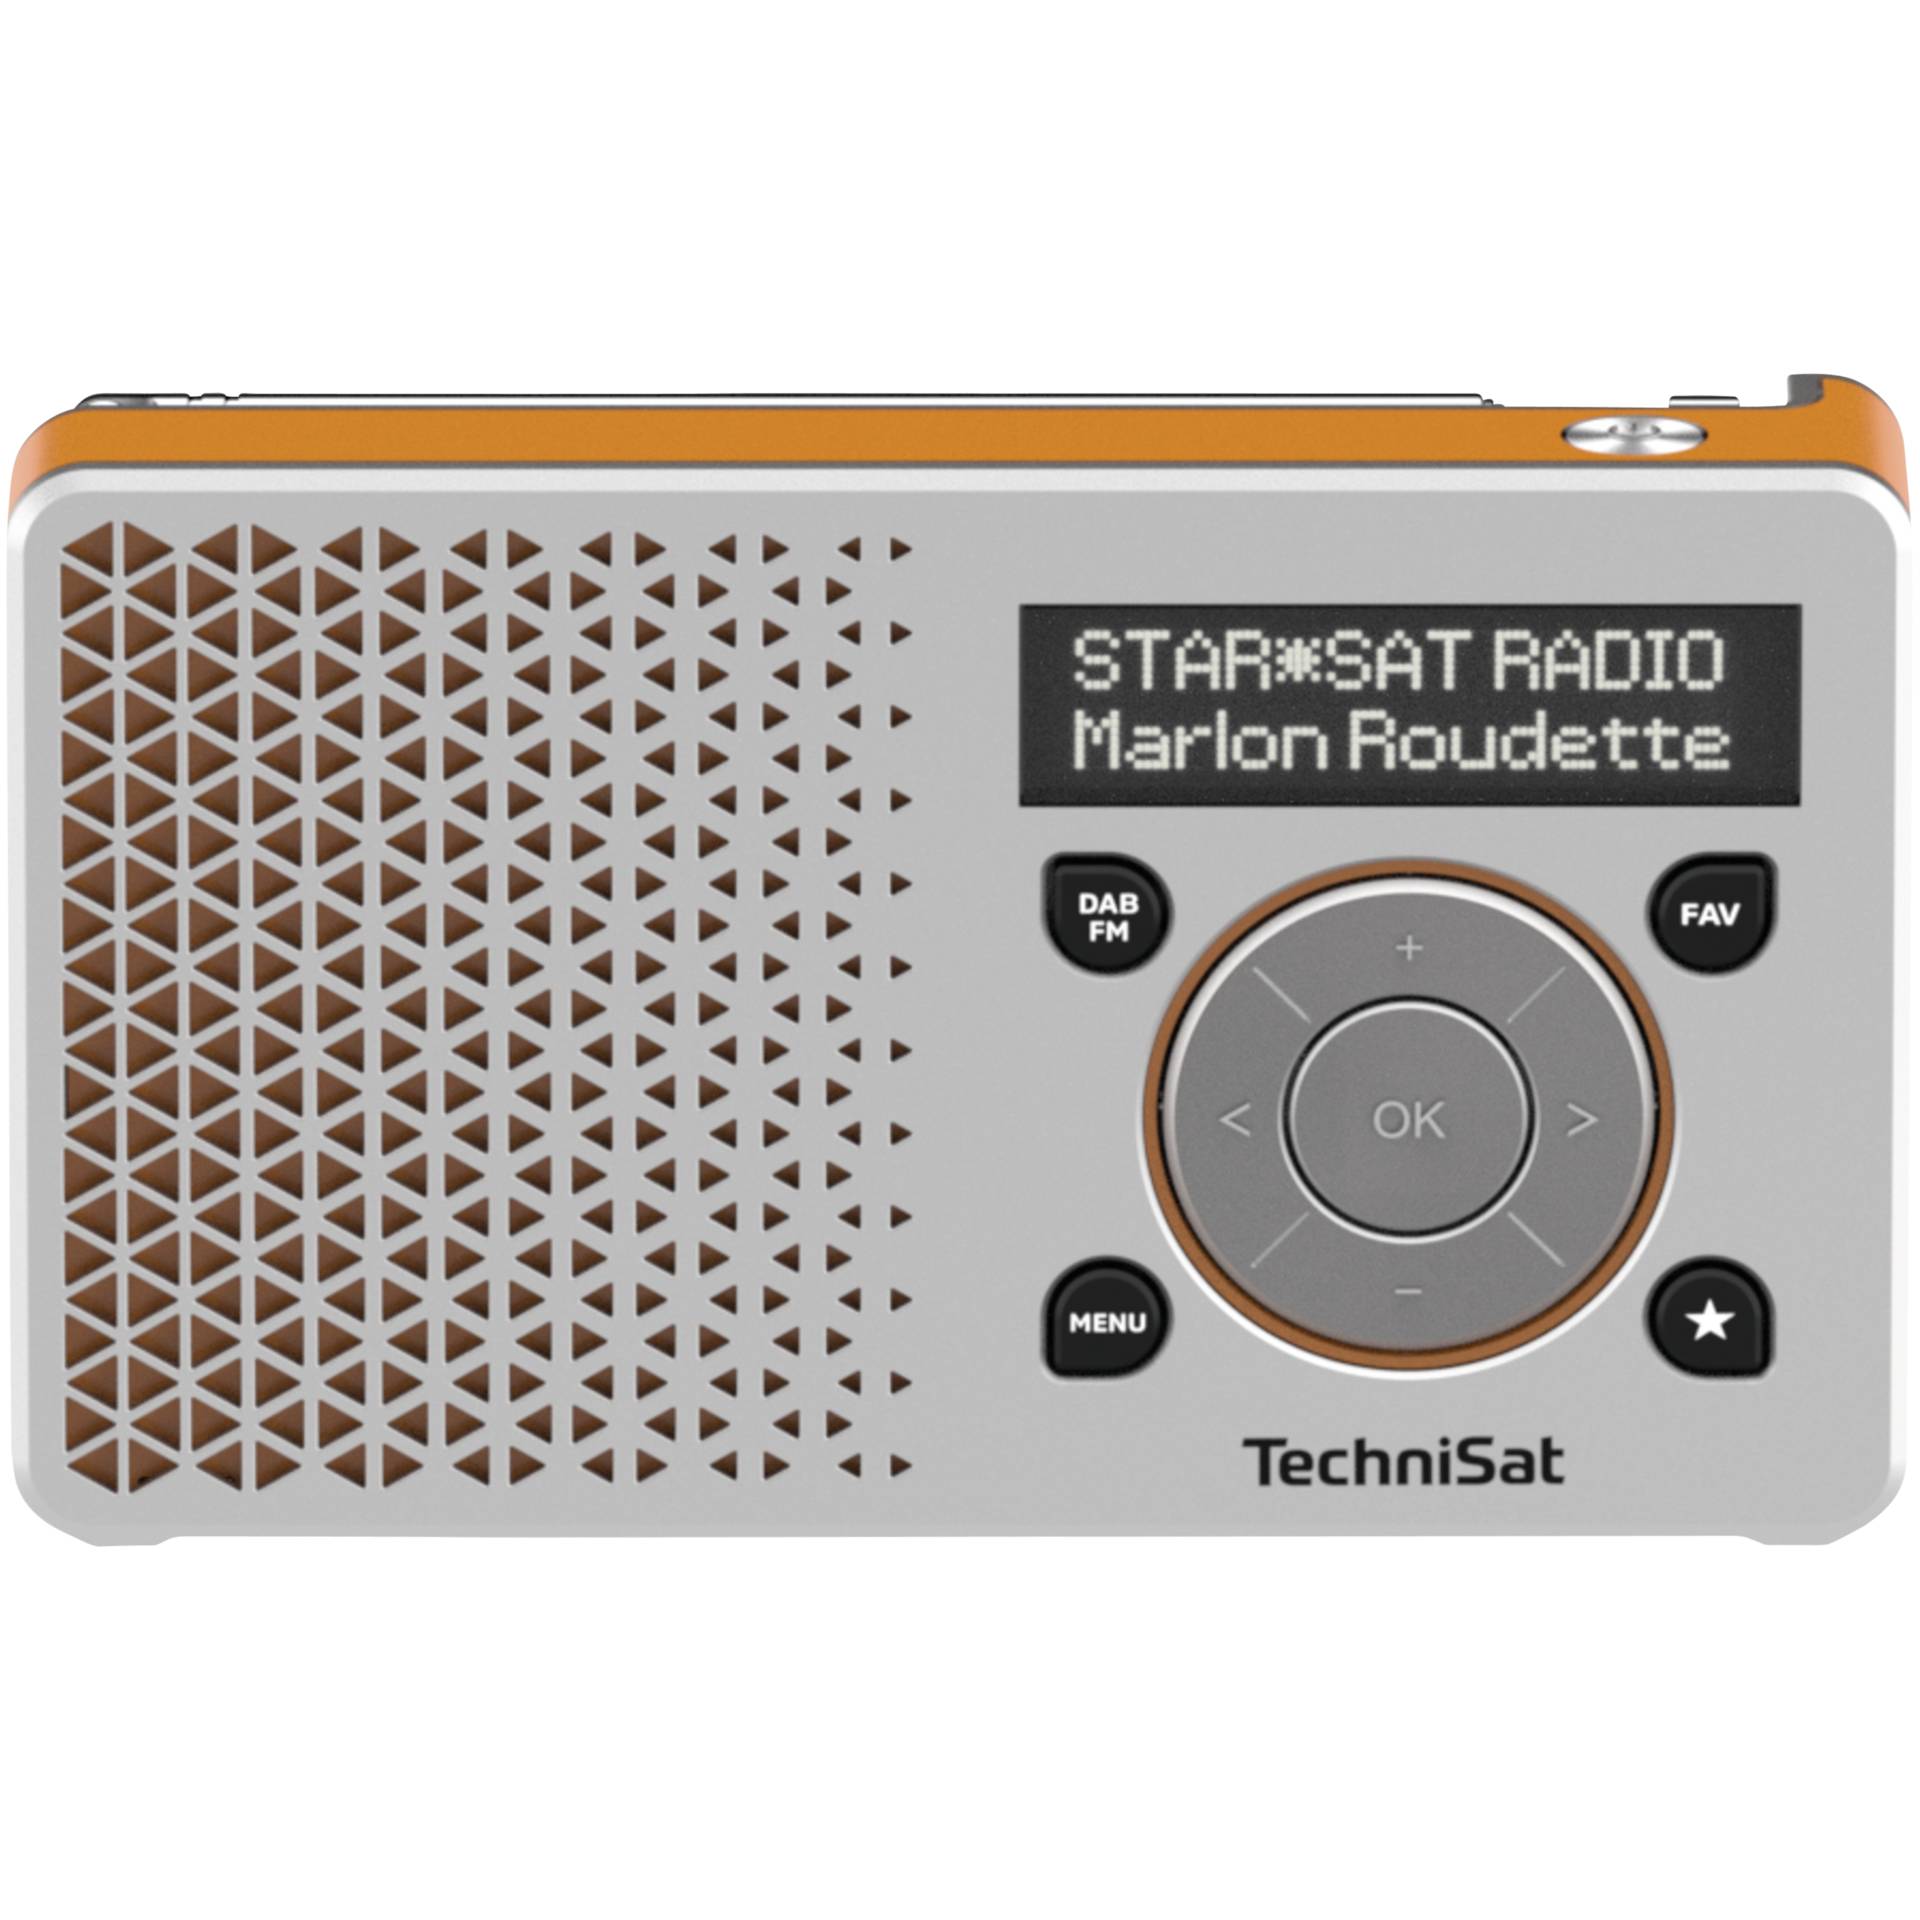 Technisat DigitRadio 1 argento/arancio